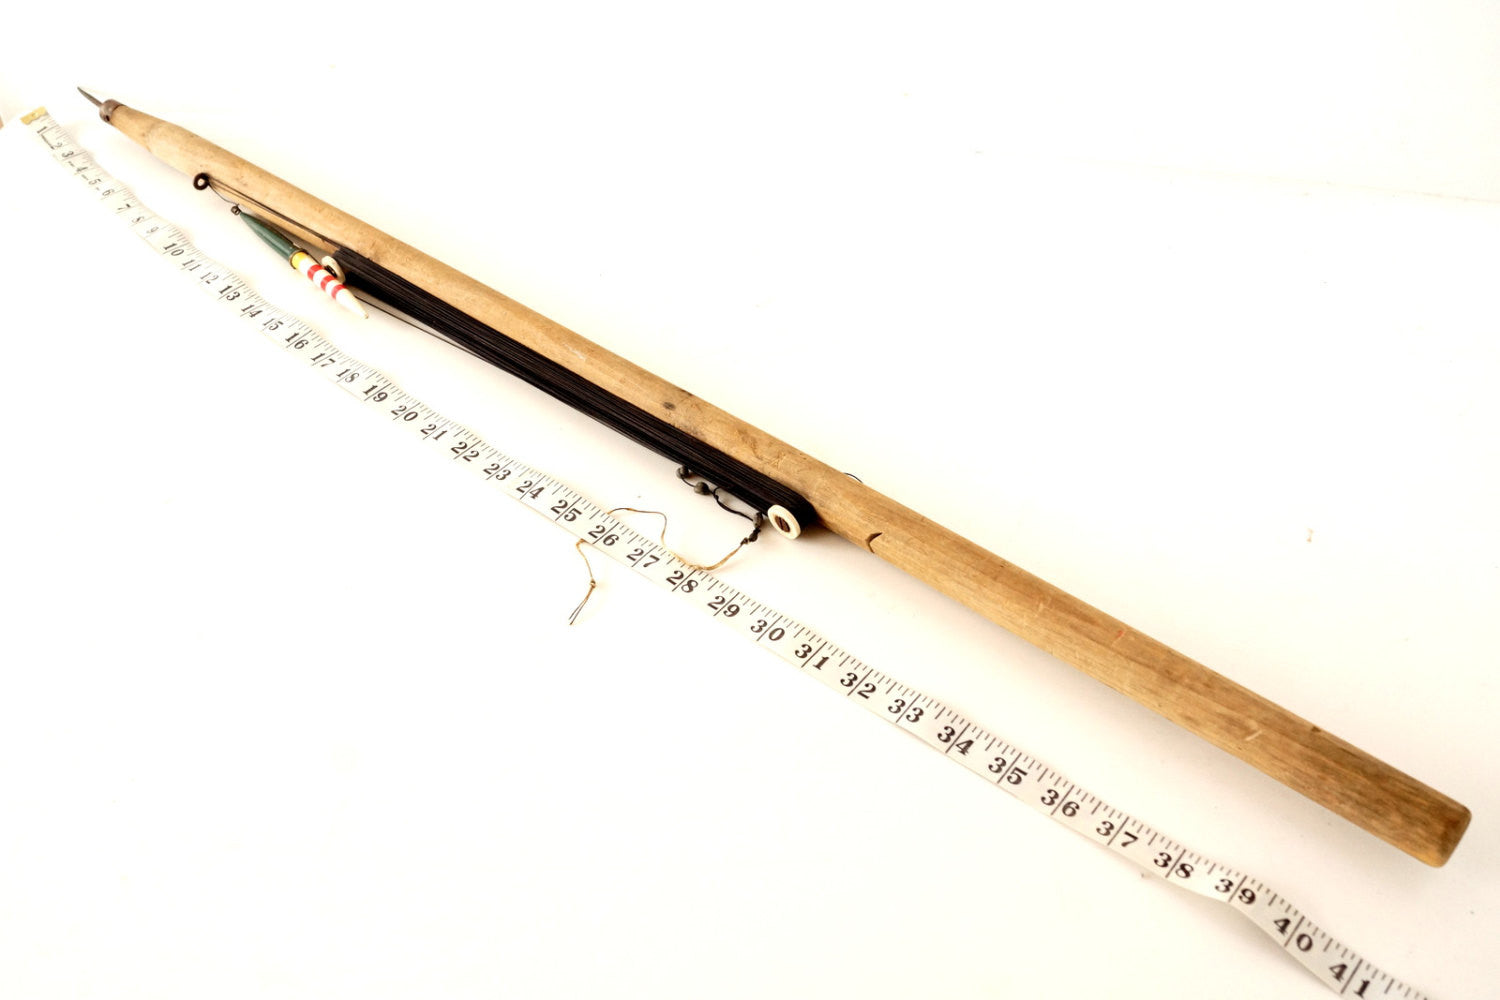 Vintage ice fishing rod, Wooden Tip Up ice fishing pole,folding